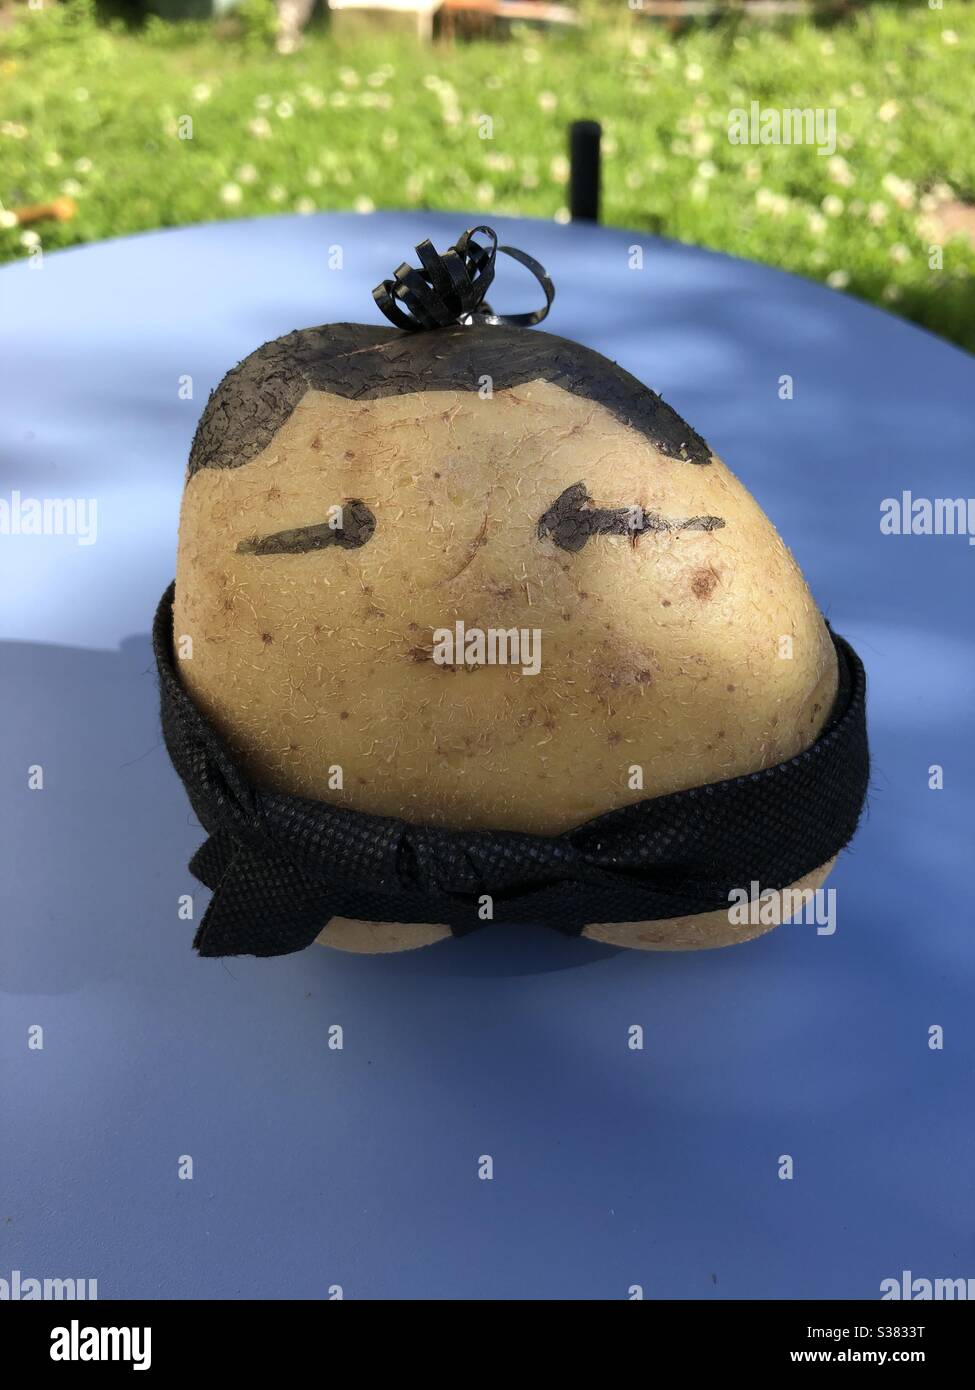 Mr Potato Head Sumo Wrestler Stock Photo